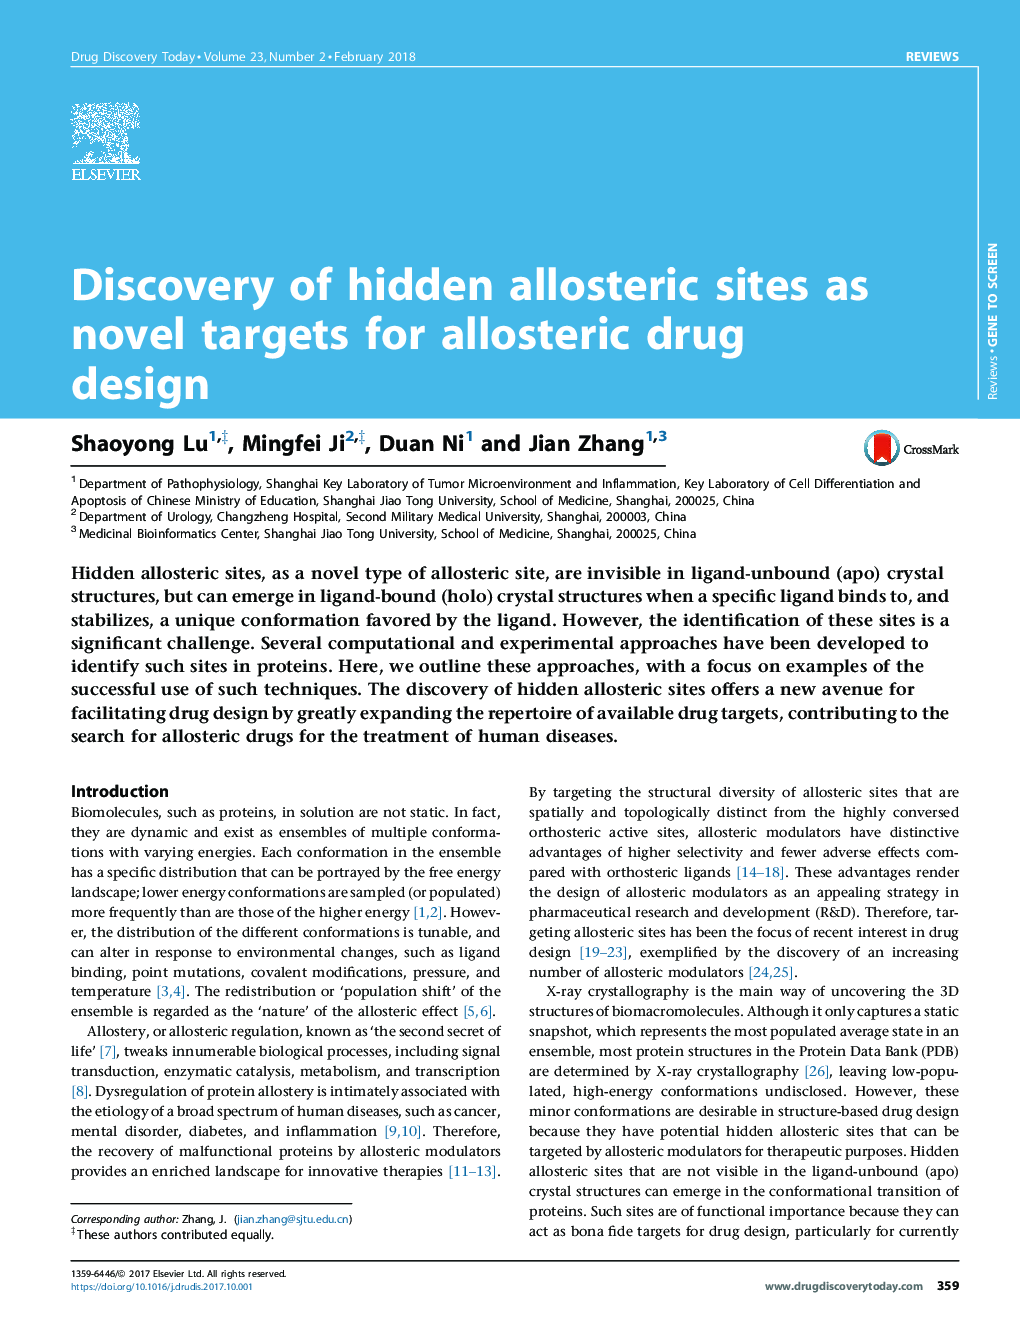 کشف سایت های آلوزیستری پنهان به عنوان اهداف جدید برای طراحی داروهای آلوستریک 